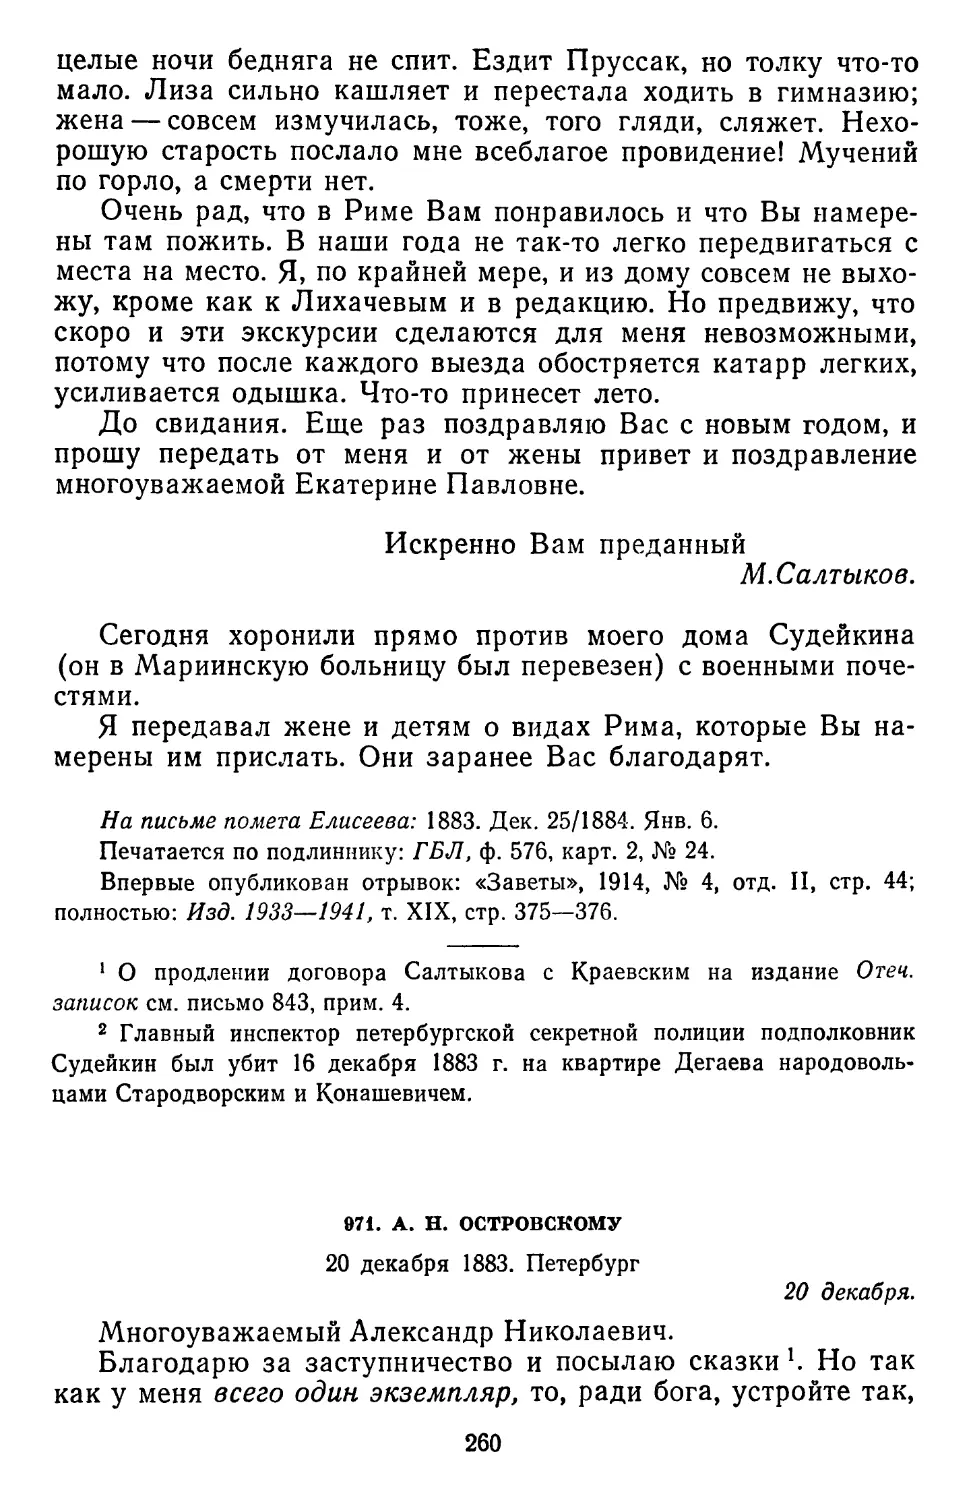 971.А.Н.Островскому. 20 декабря 1883. Петербург .